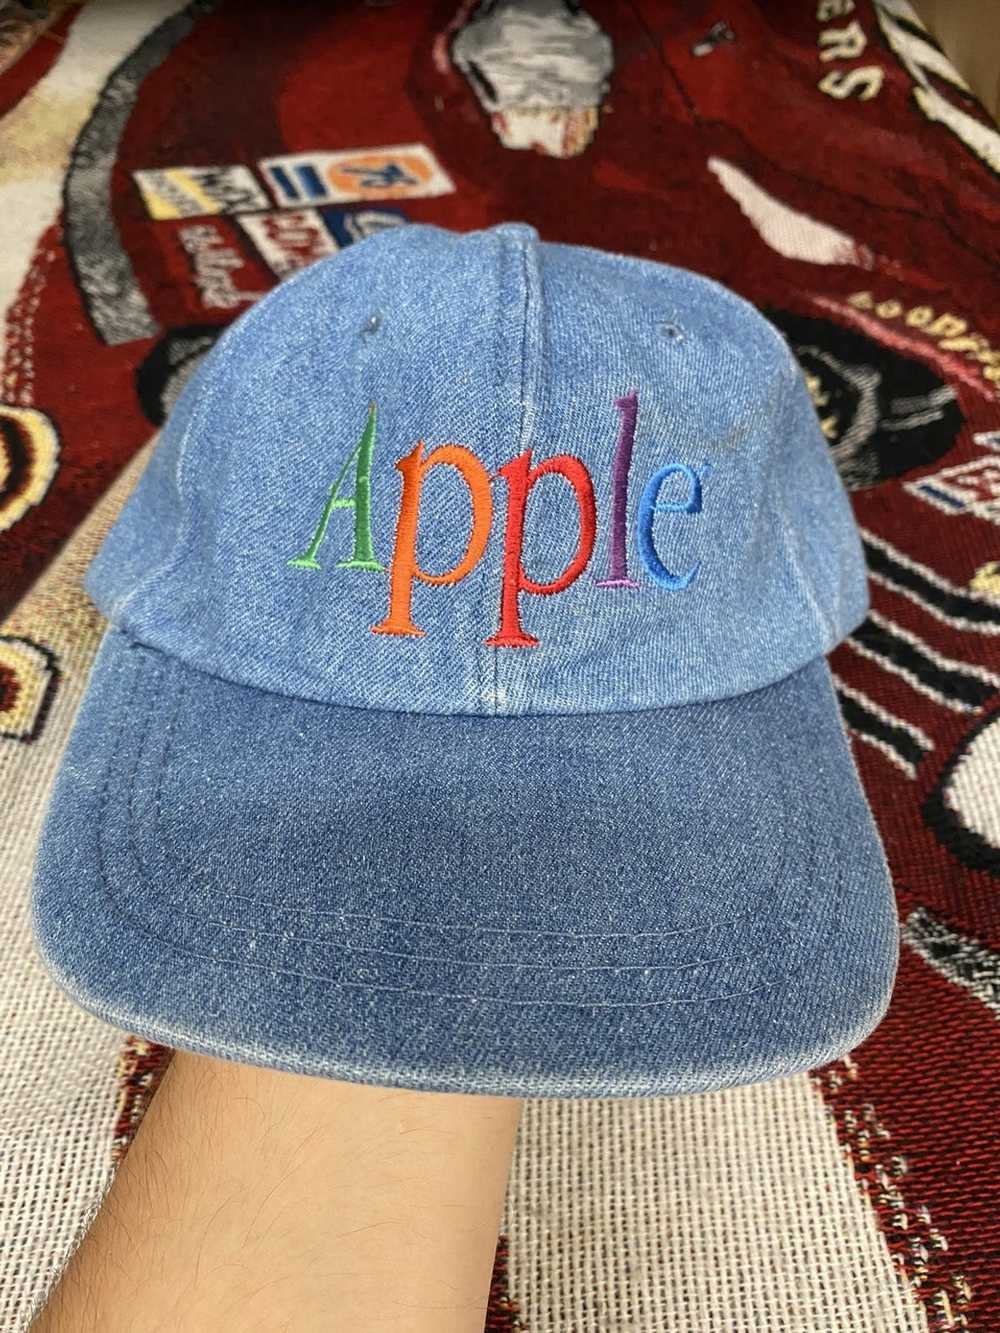 Vintage s apple logo   Gem